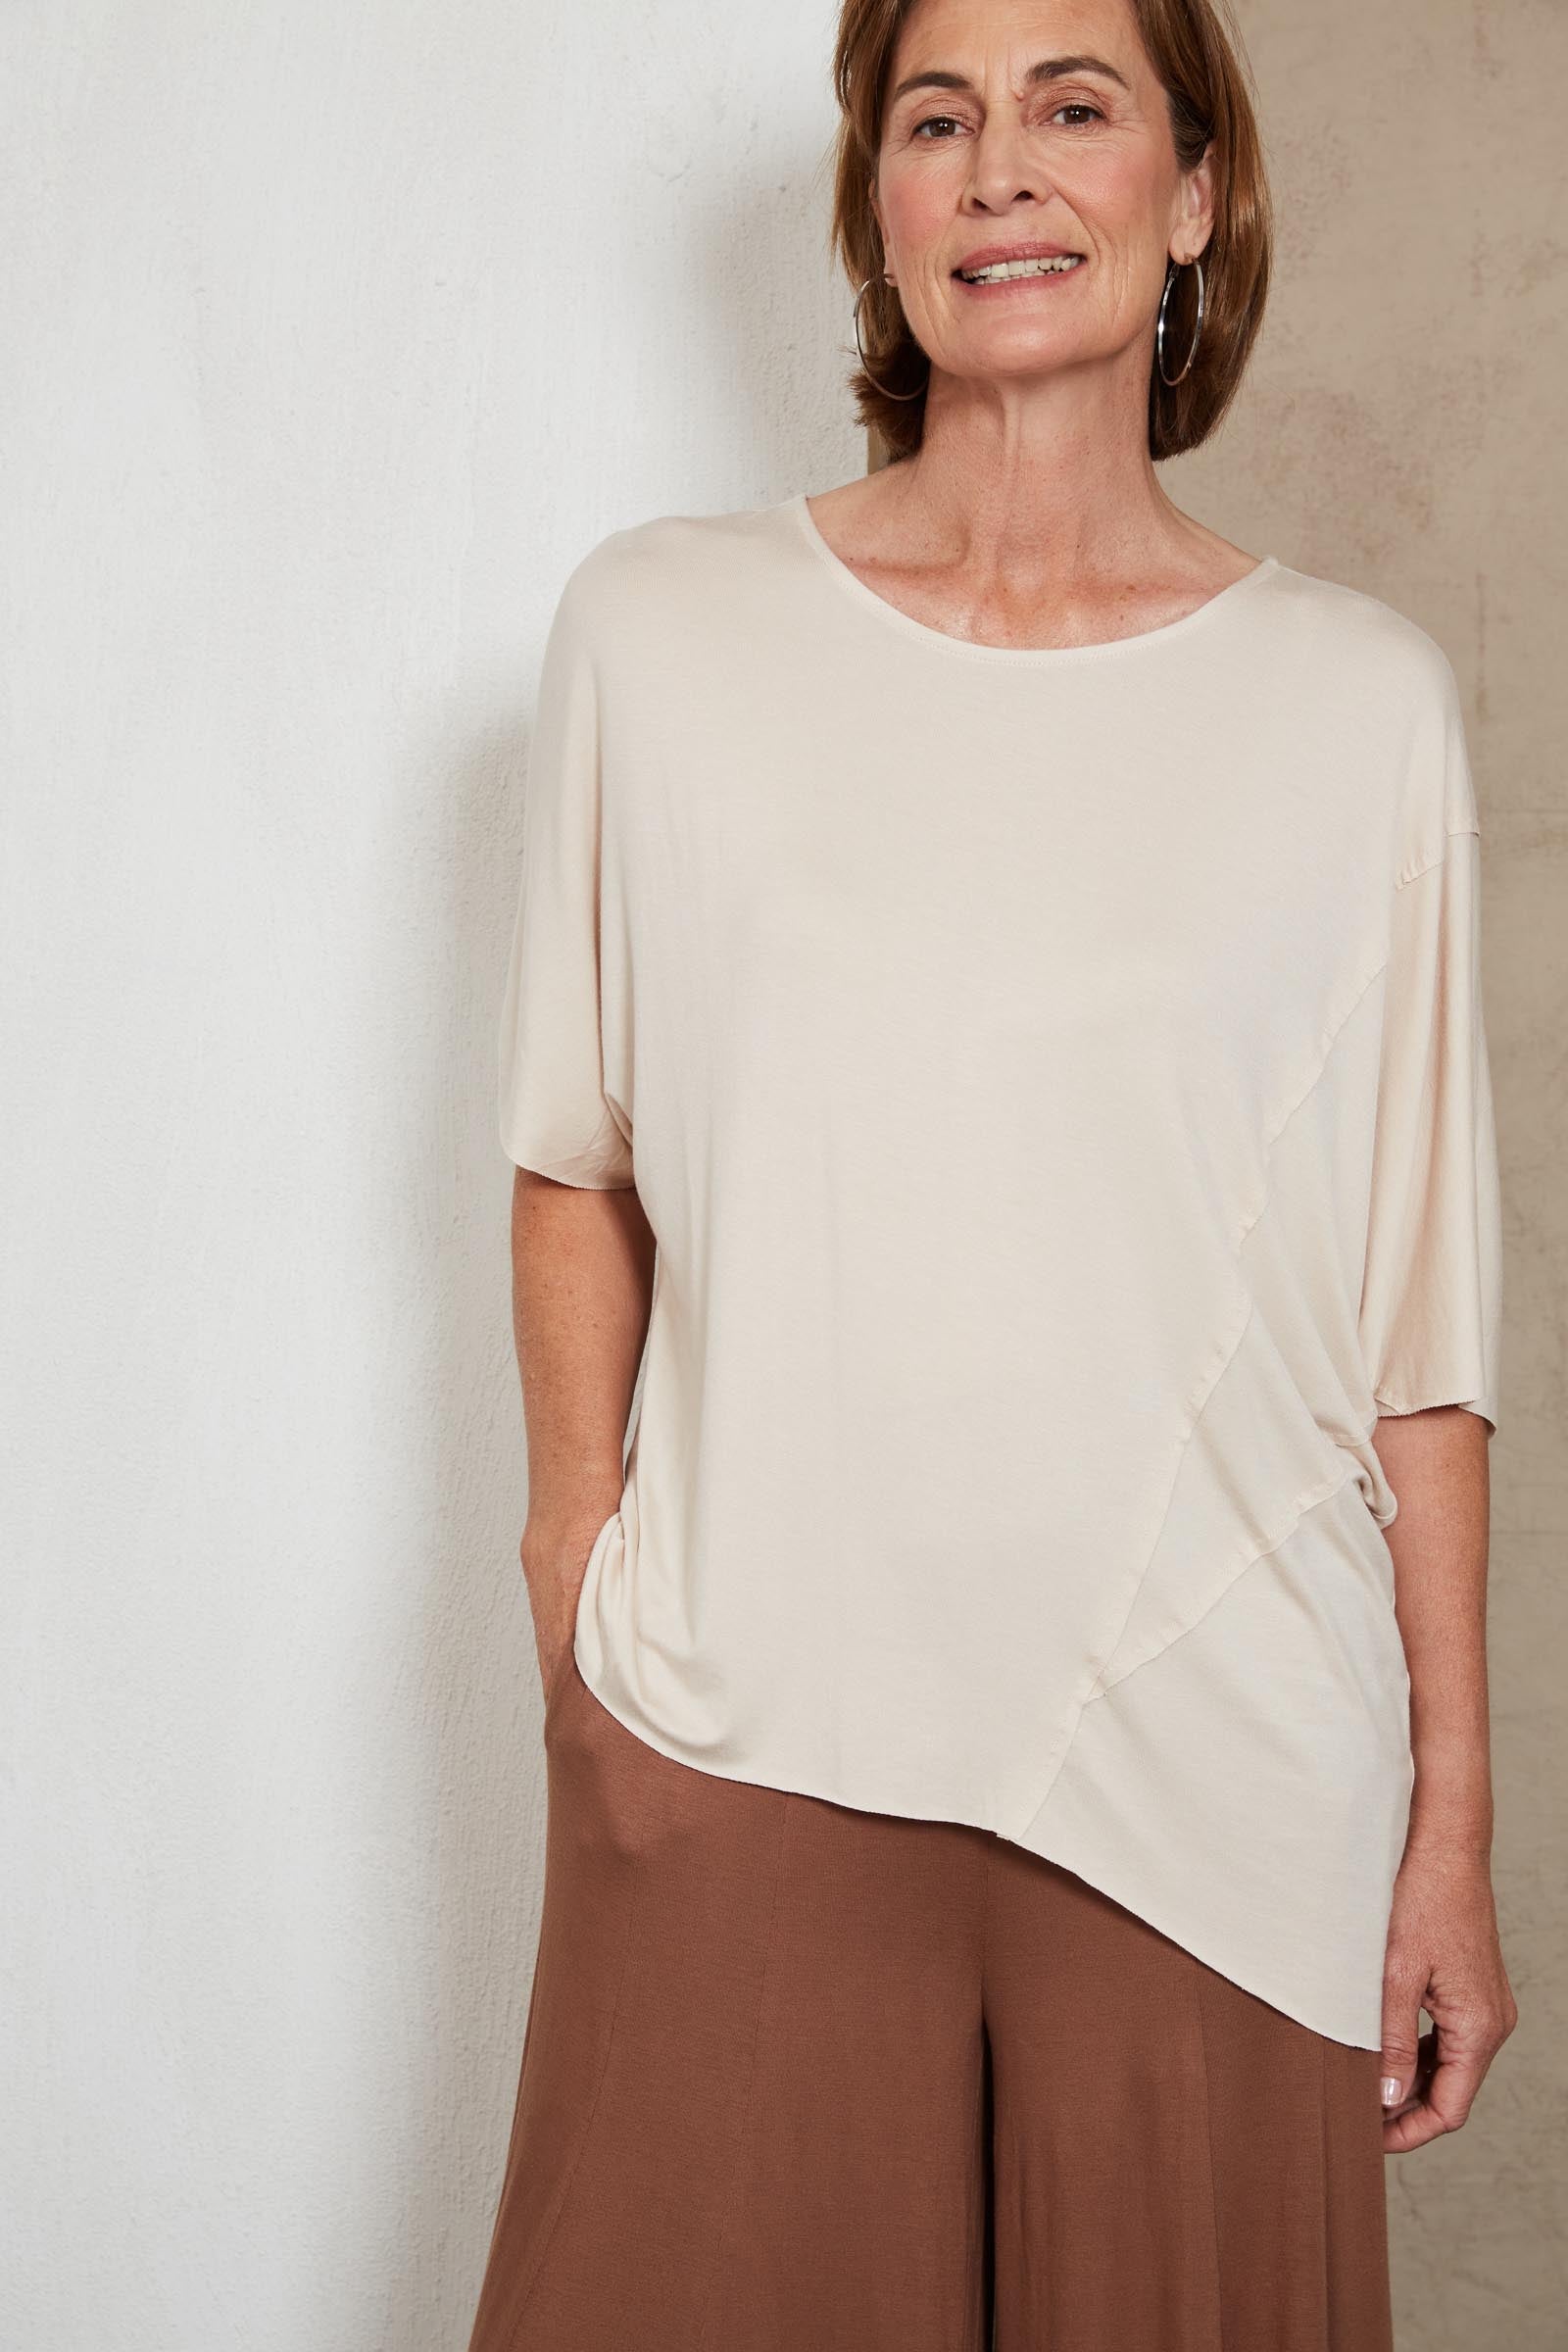 Zinnia Tshirt - Tusk - eb&ive Clothing - Top Tshirt S/S